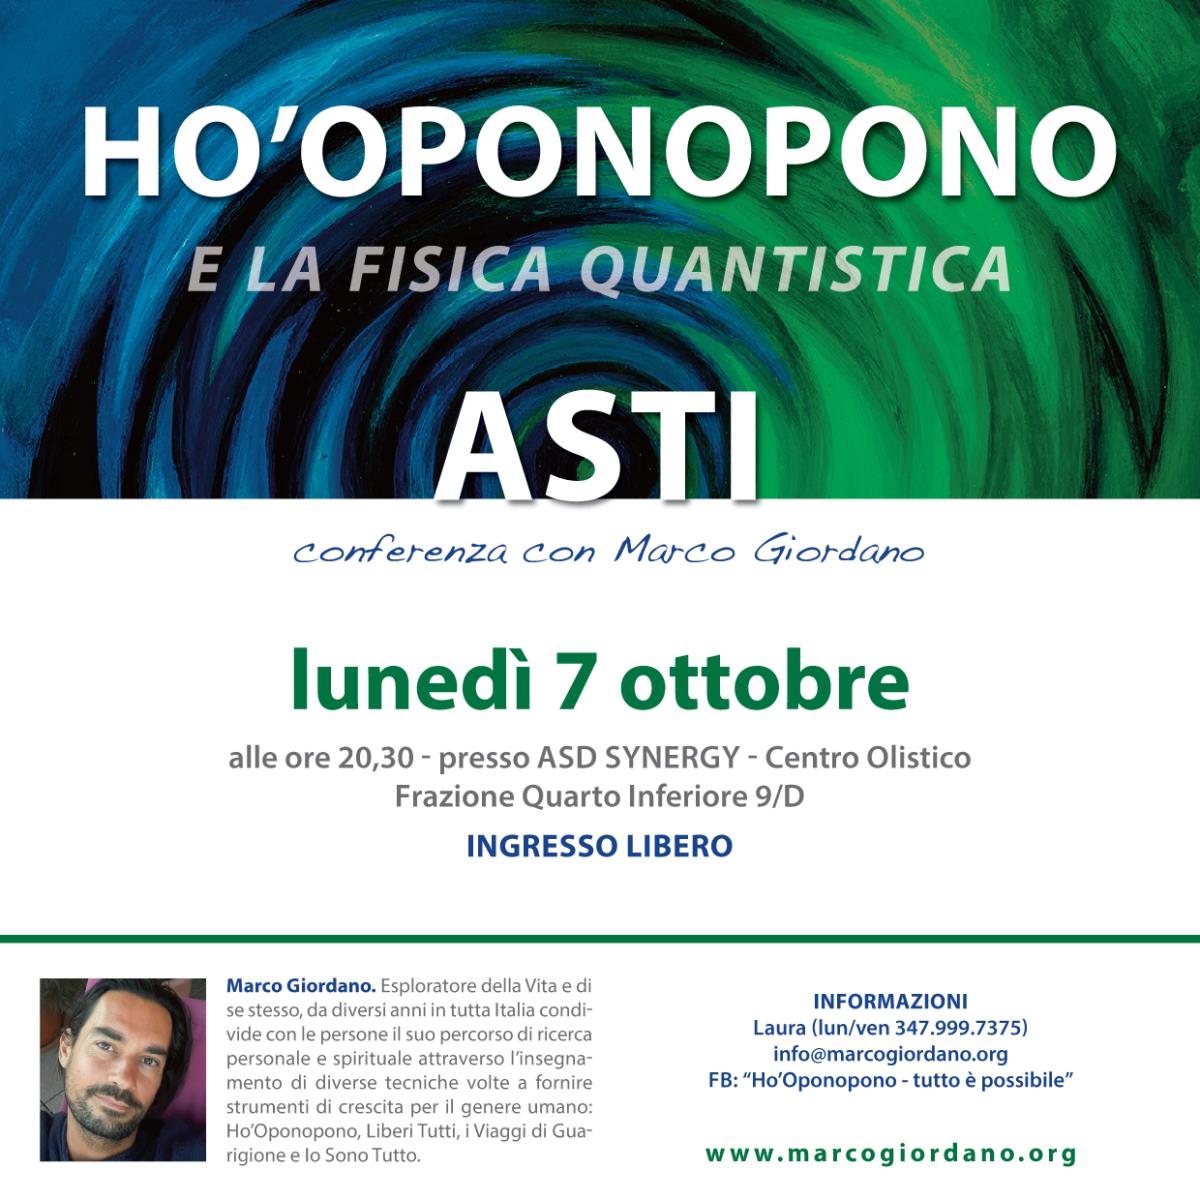 <b>HO'OPONOPONO e la Fisica Quantistica - conferenza</b> luned 7 ottobre <b>ASTI